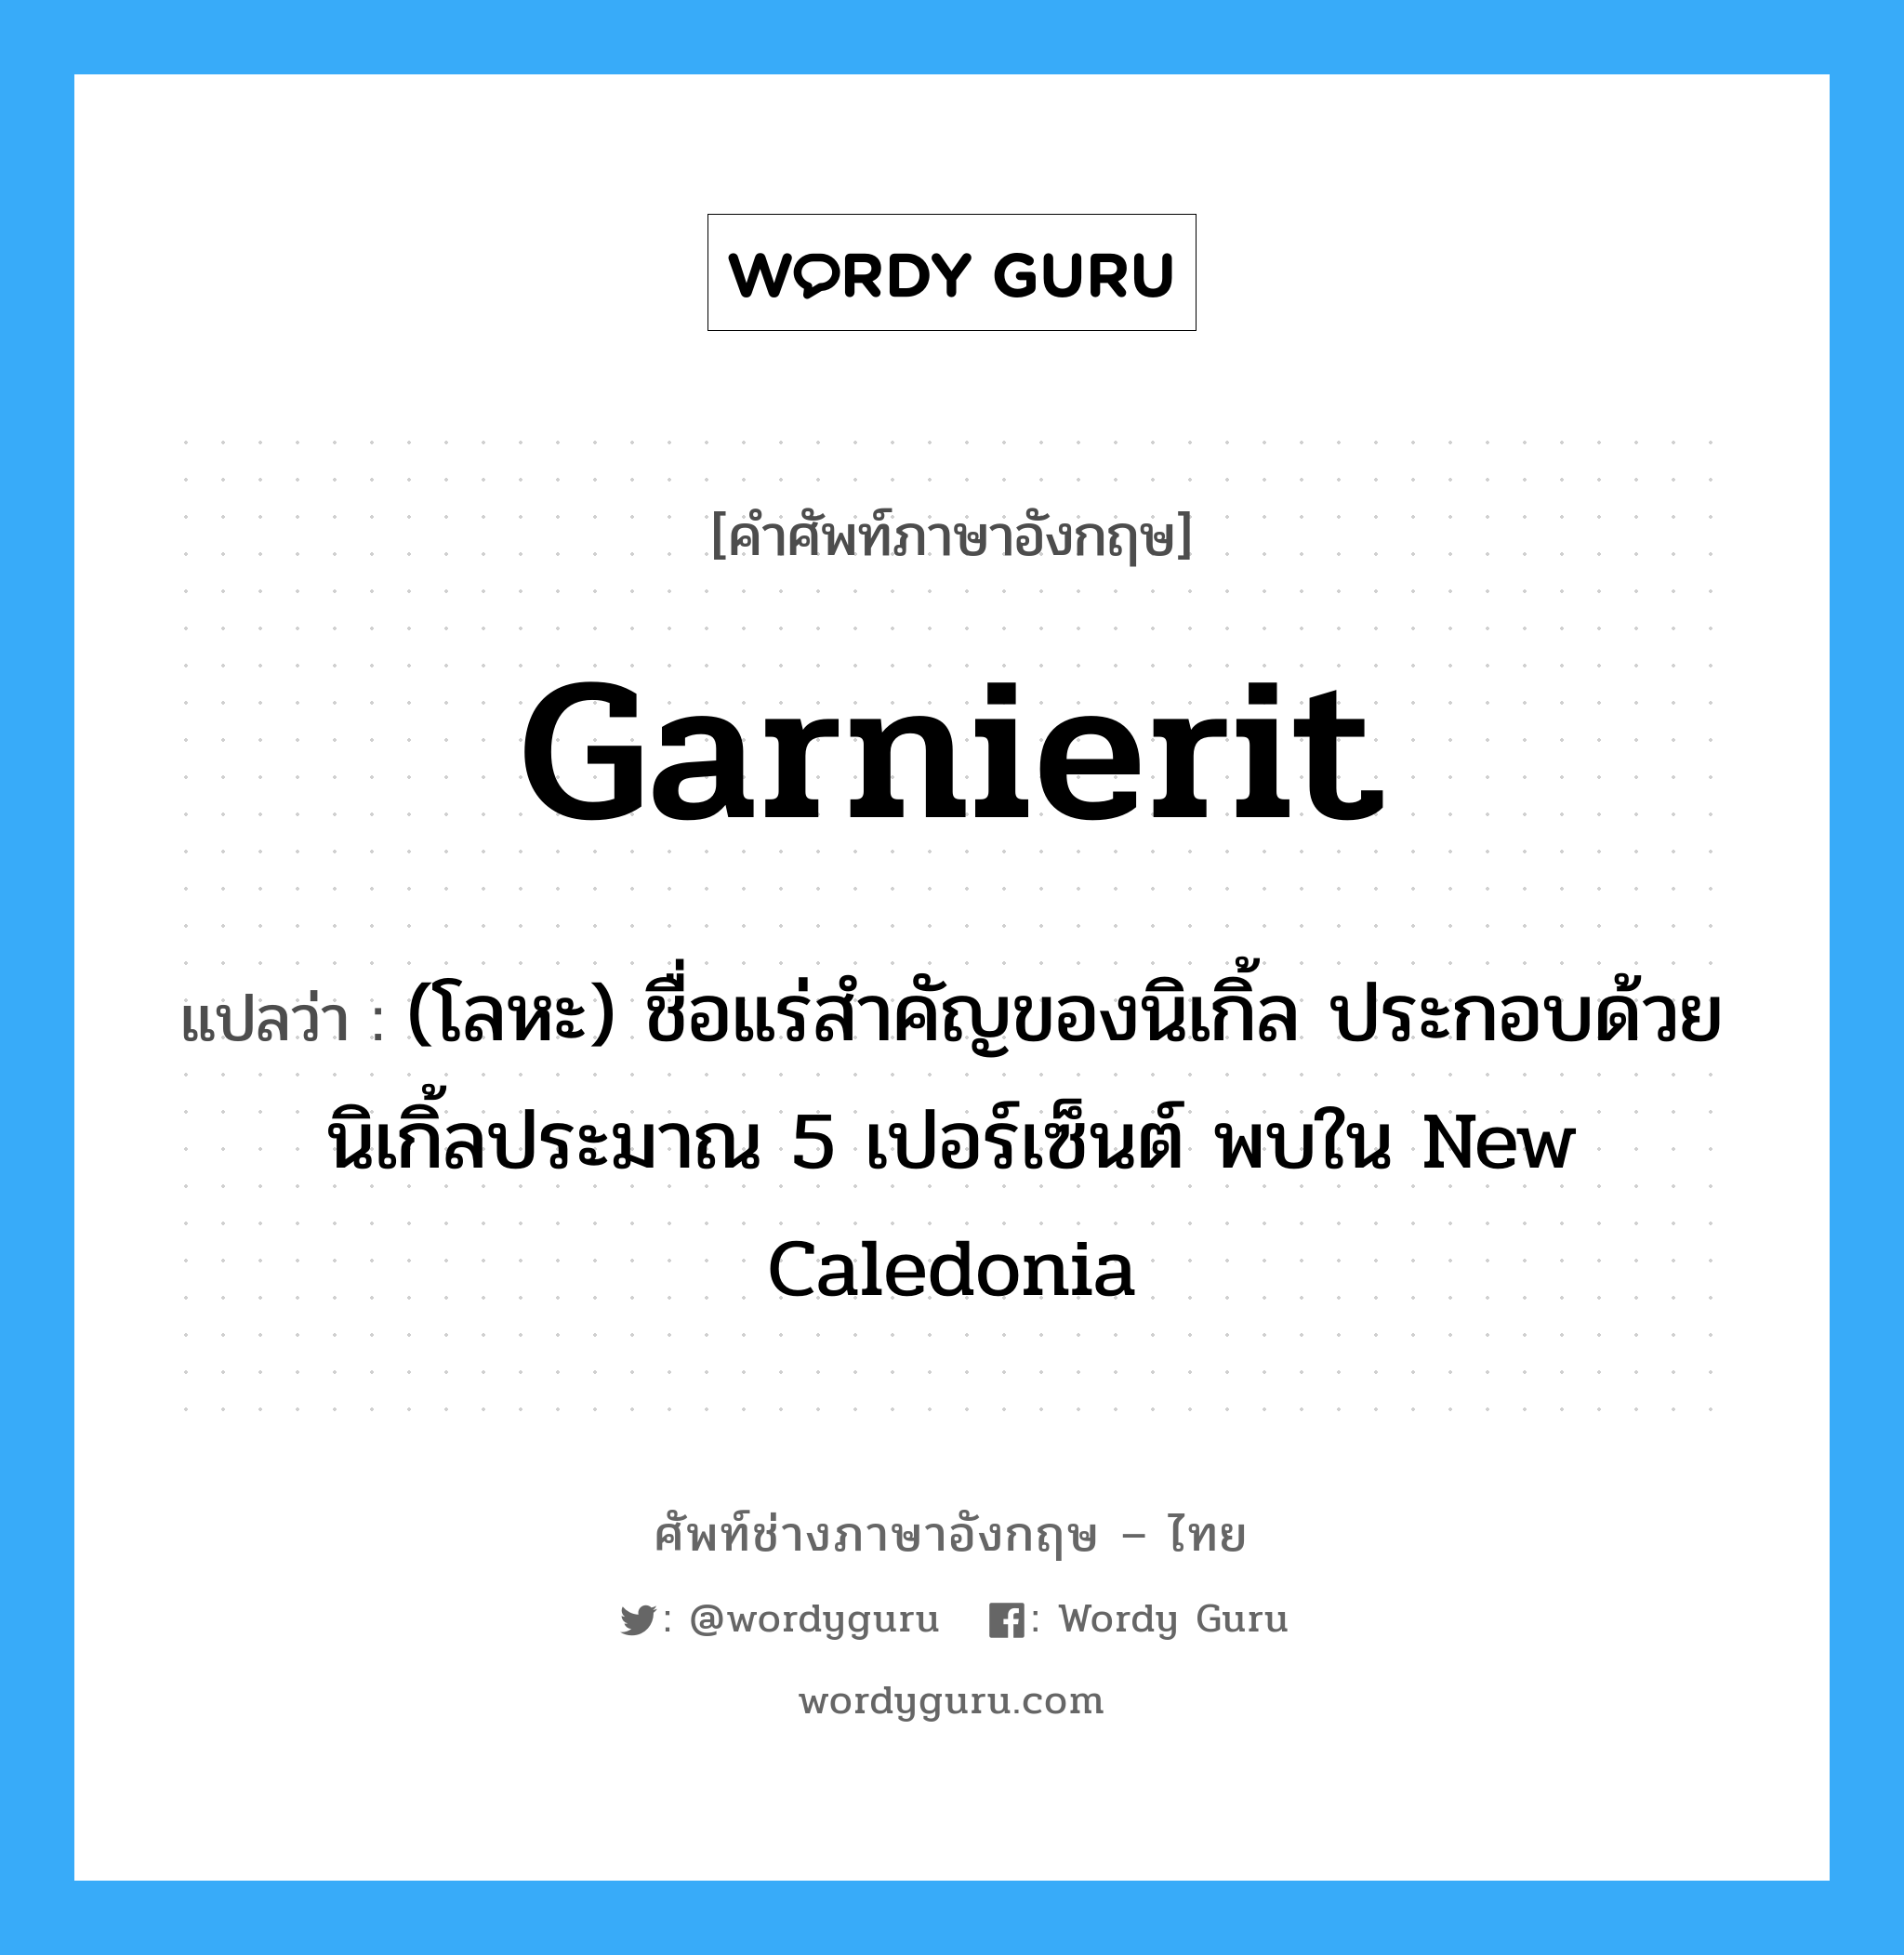 garnierit แปลว่า?, คำศัพท์ช่างภาษาอังกฤษ - ไทย garnierit คำศัพท์ภาษาอังกฤษ garnierit แปลว่า (โลหะ) ชื่อแร่สำคัญของนิเกิ้ล ประกอบด้วยนิเกิ้ลประมาณ 5 เปอร์เซ็นต์ พบใน New Caledonia